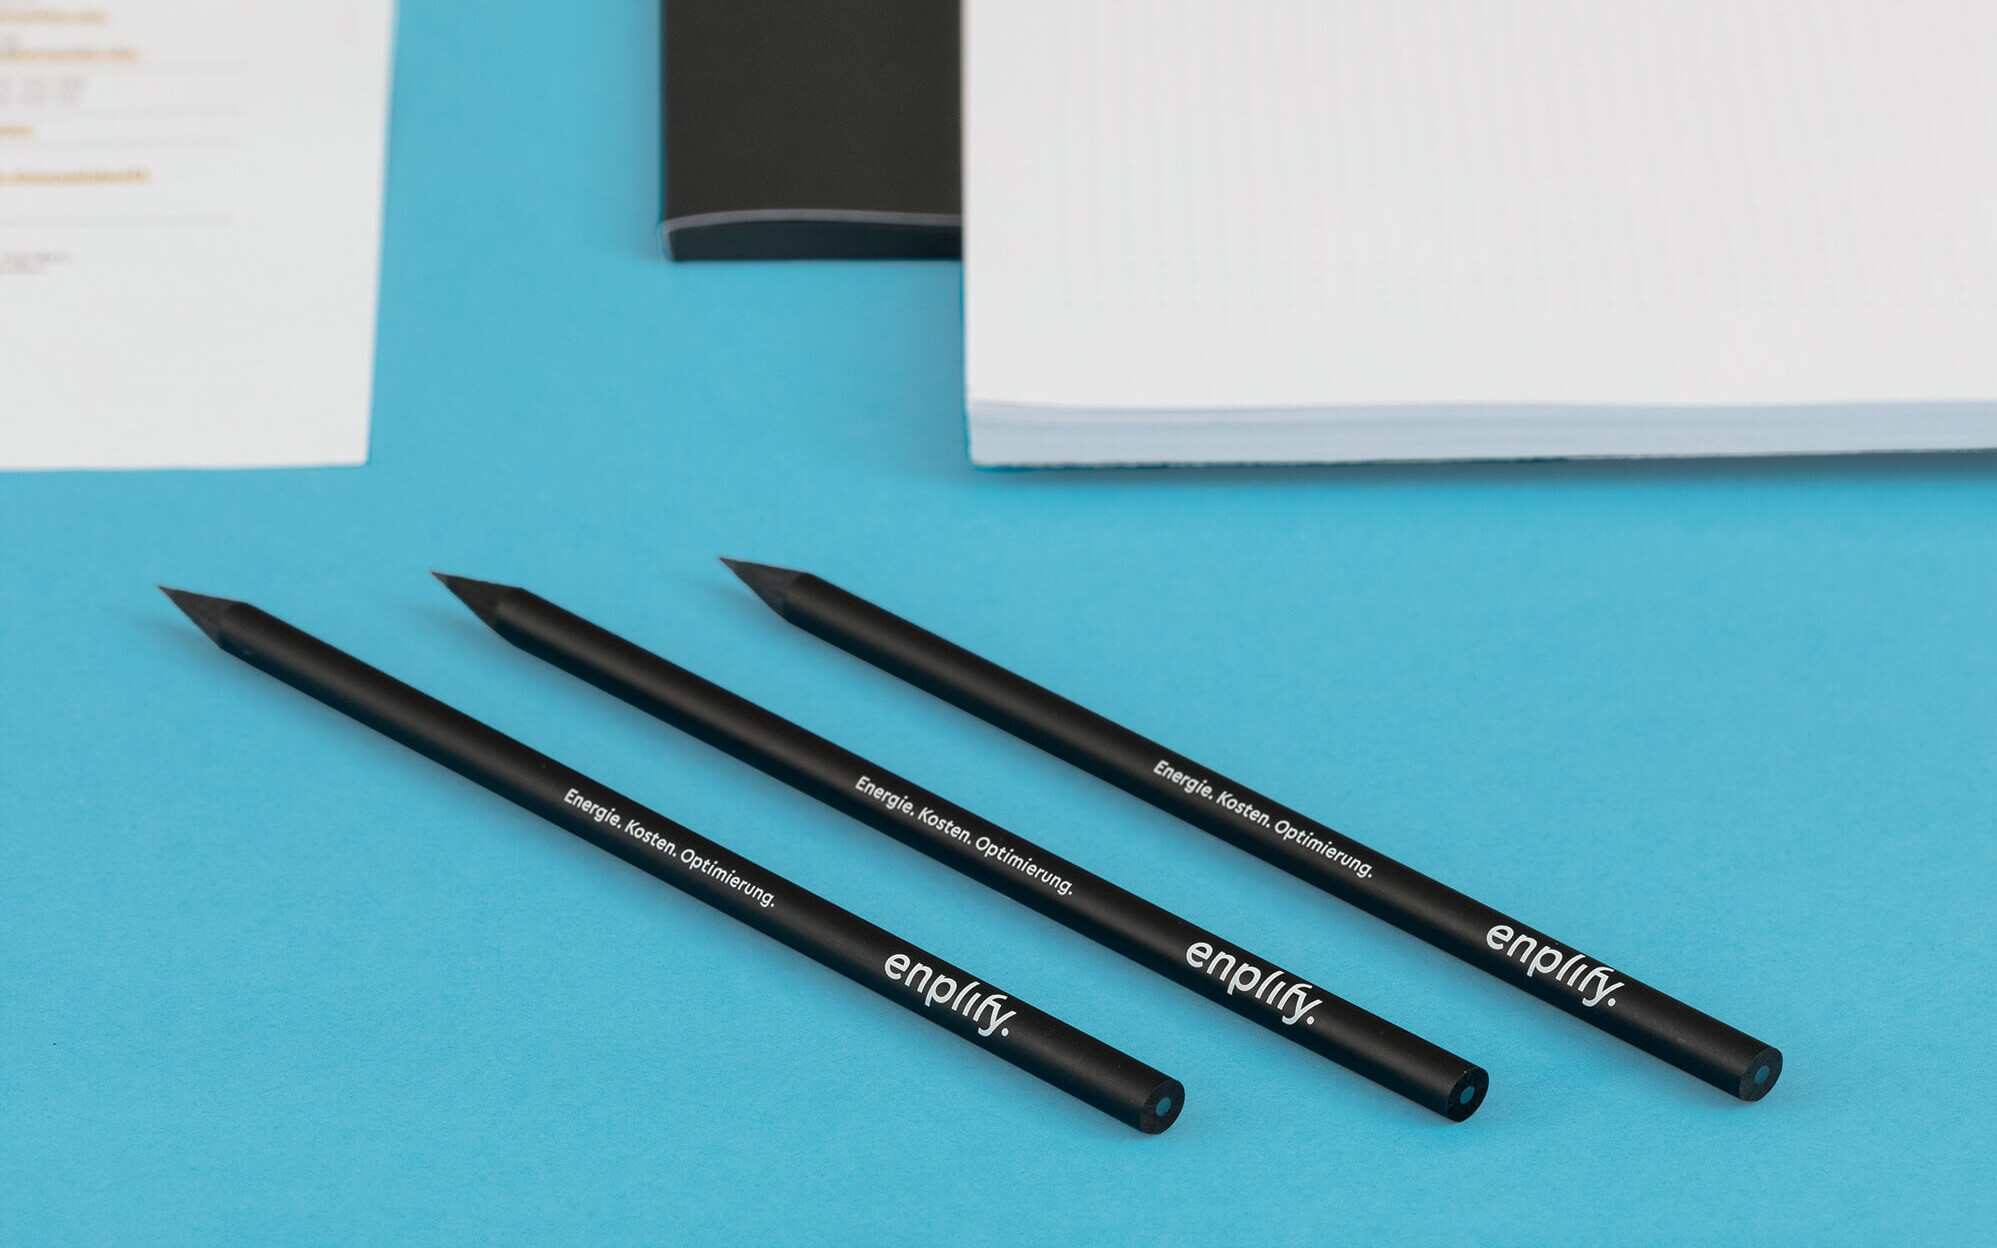 Schwarze Bleistifte mit aufgedrucktem enplify Logo und Slogan